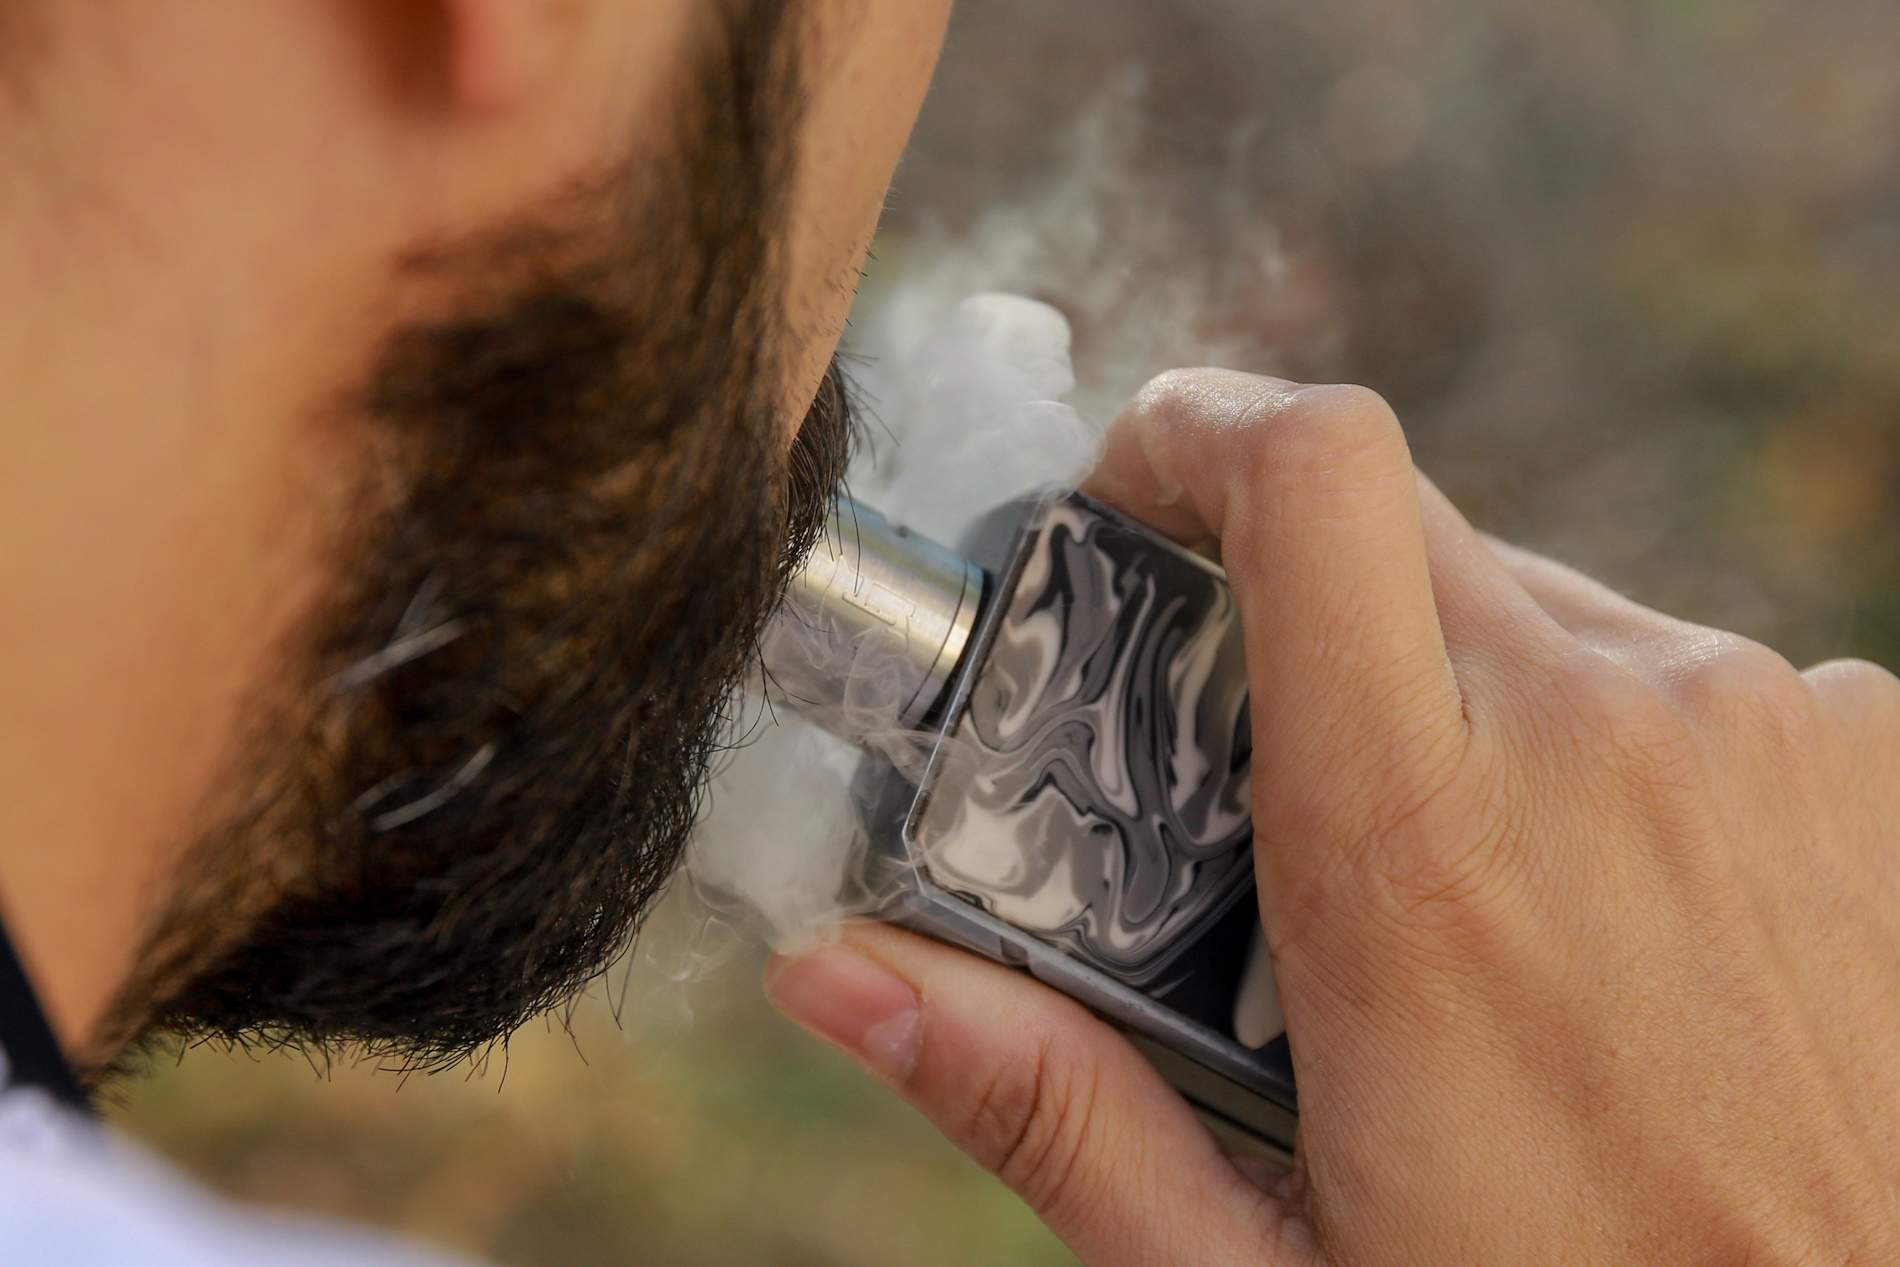 Un nou estudi demostra que el fum del 'vaper' és menys perjudicial que el del tabac convencional